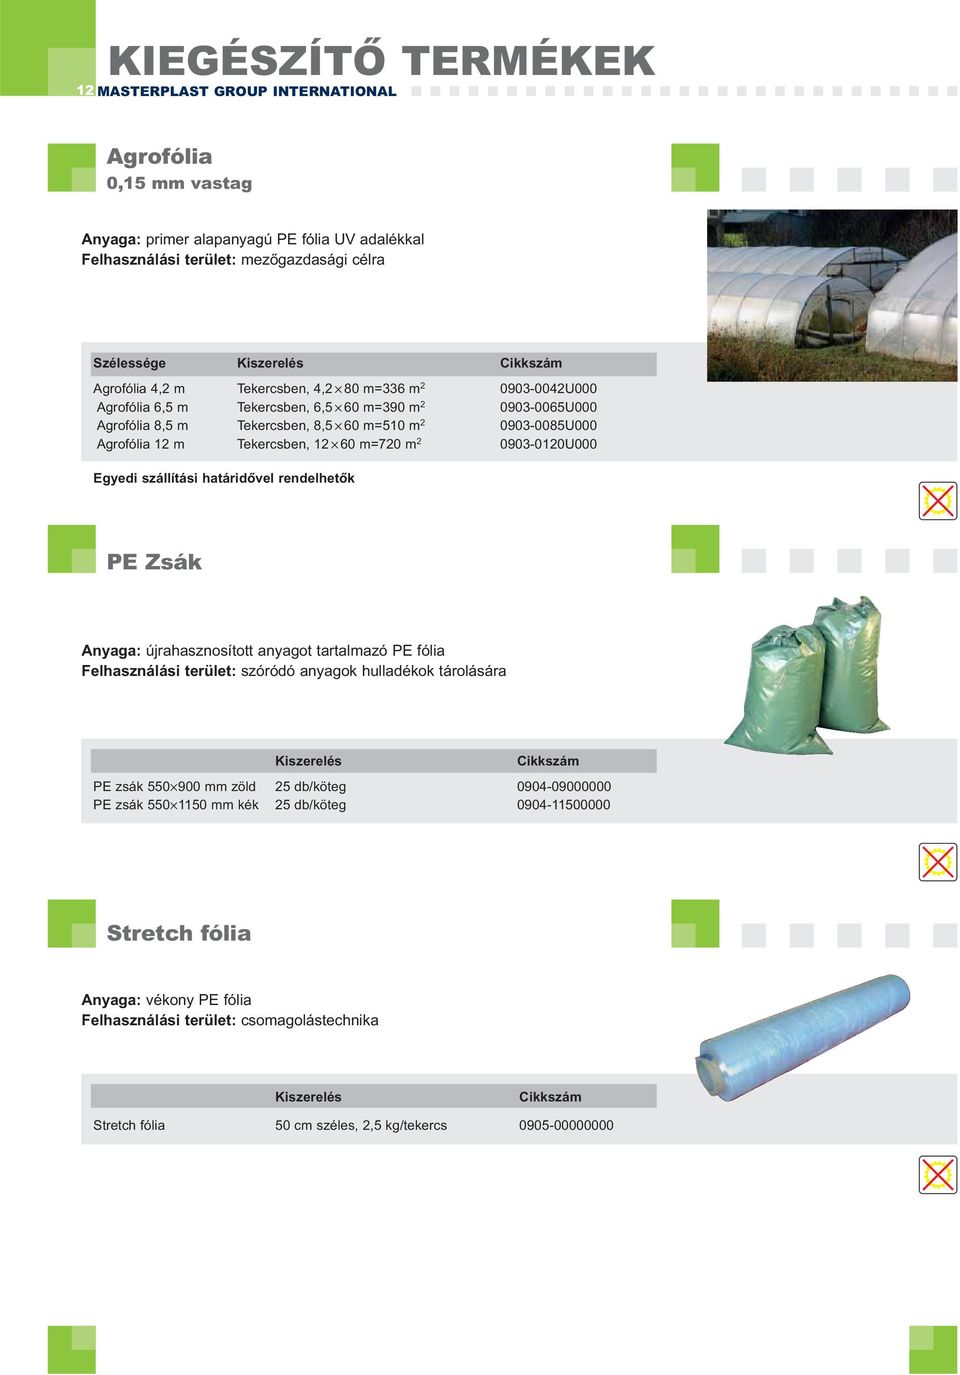 m 2 0903-0120U000 Egyedi szállítási határidővel rendelhetők PE Zsák Anyaga: újrahasznosított anyagot tartalmazó PE fólia Felhasználási terület: szóródó anyagok hulladékok tárolására PE zsák 550 900